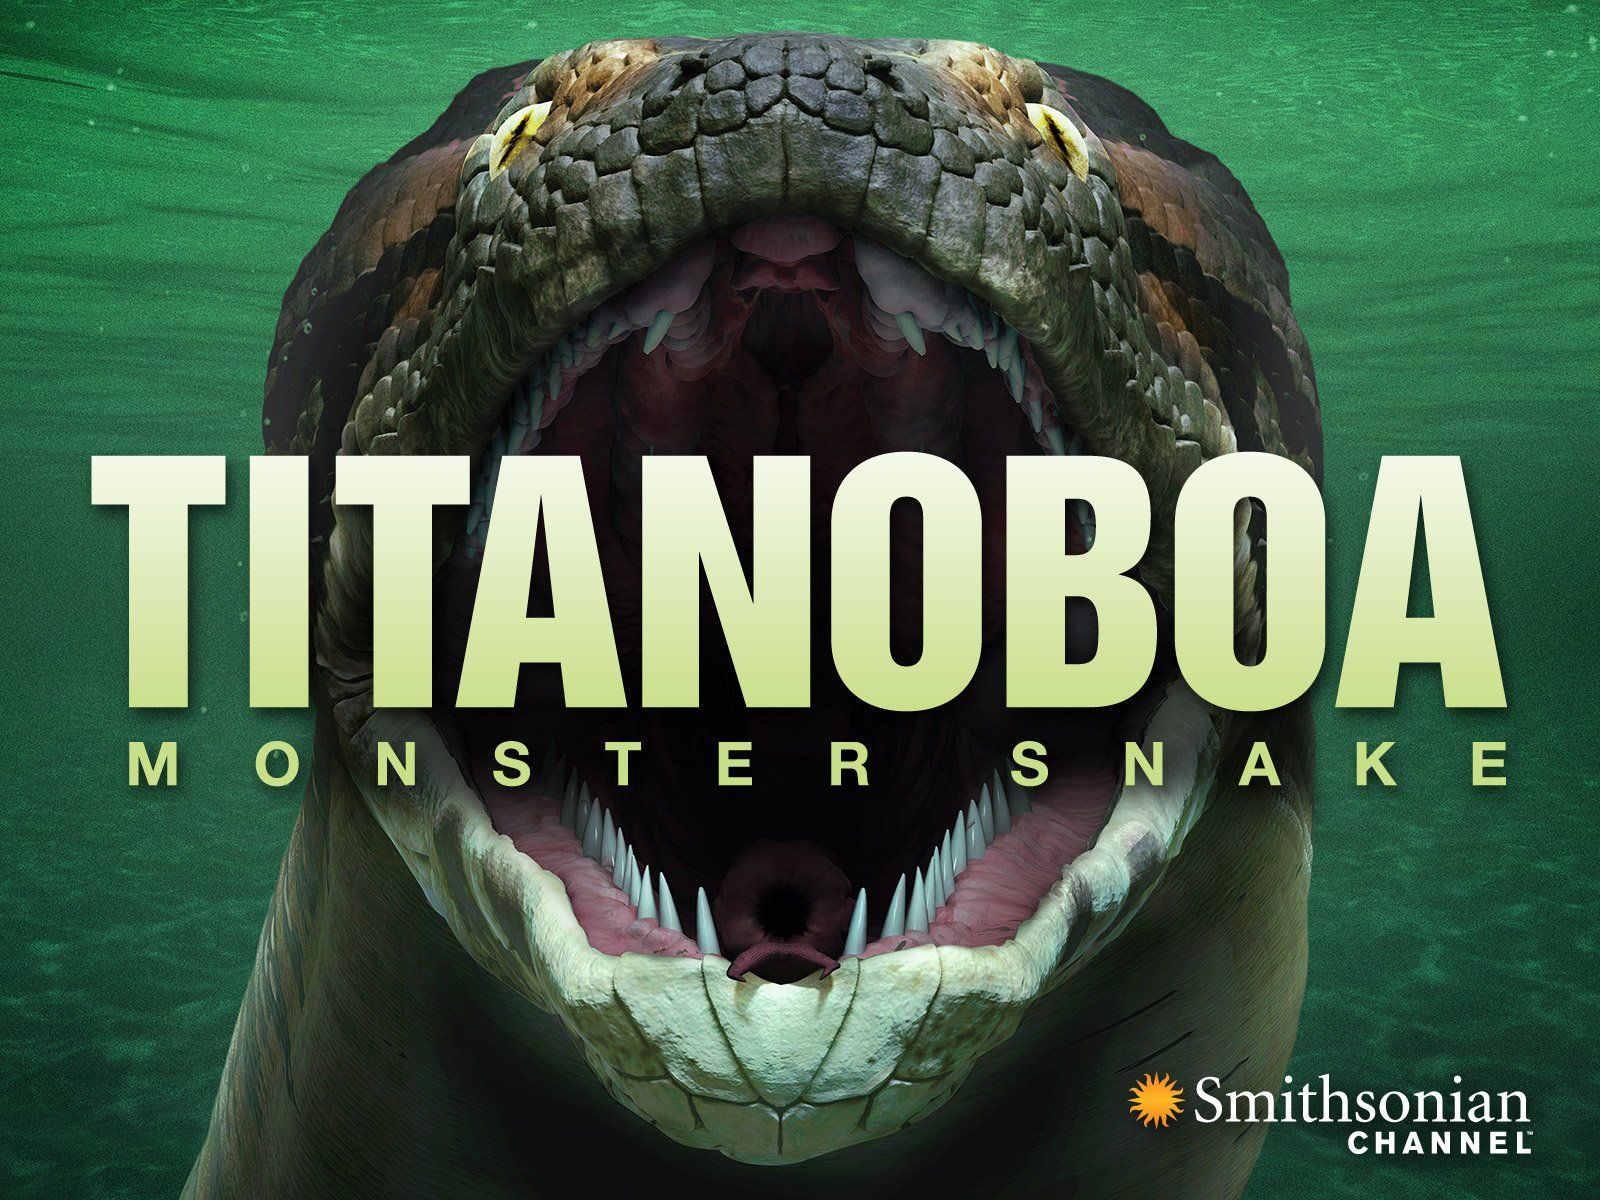 Watch Titanoboa: Monster Snake